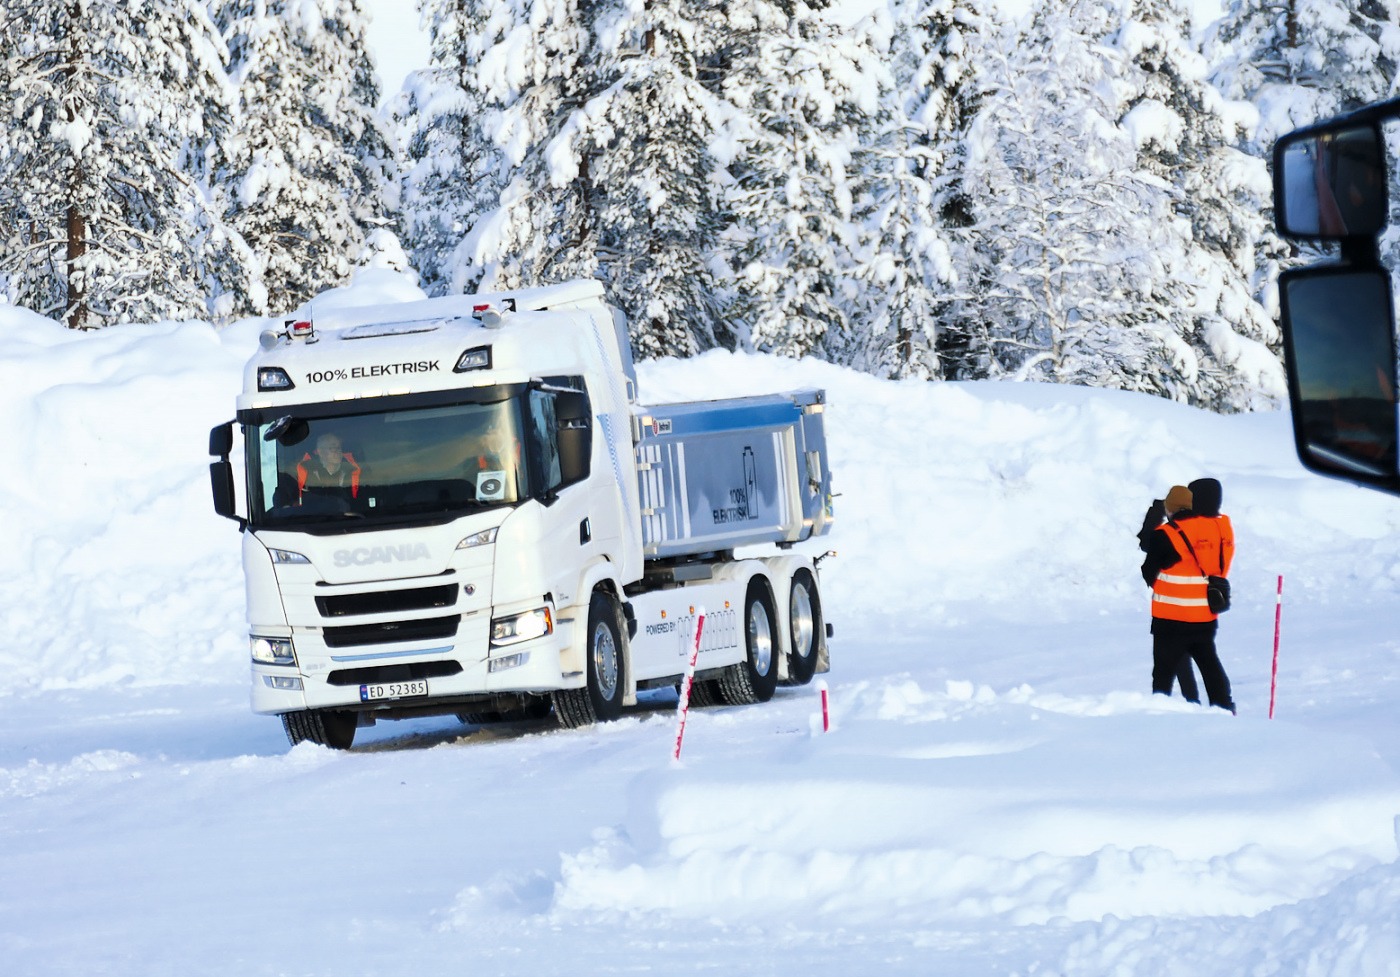 Scania beurlaubt schwedische Belegschaft